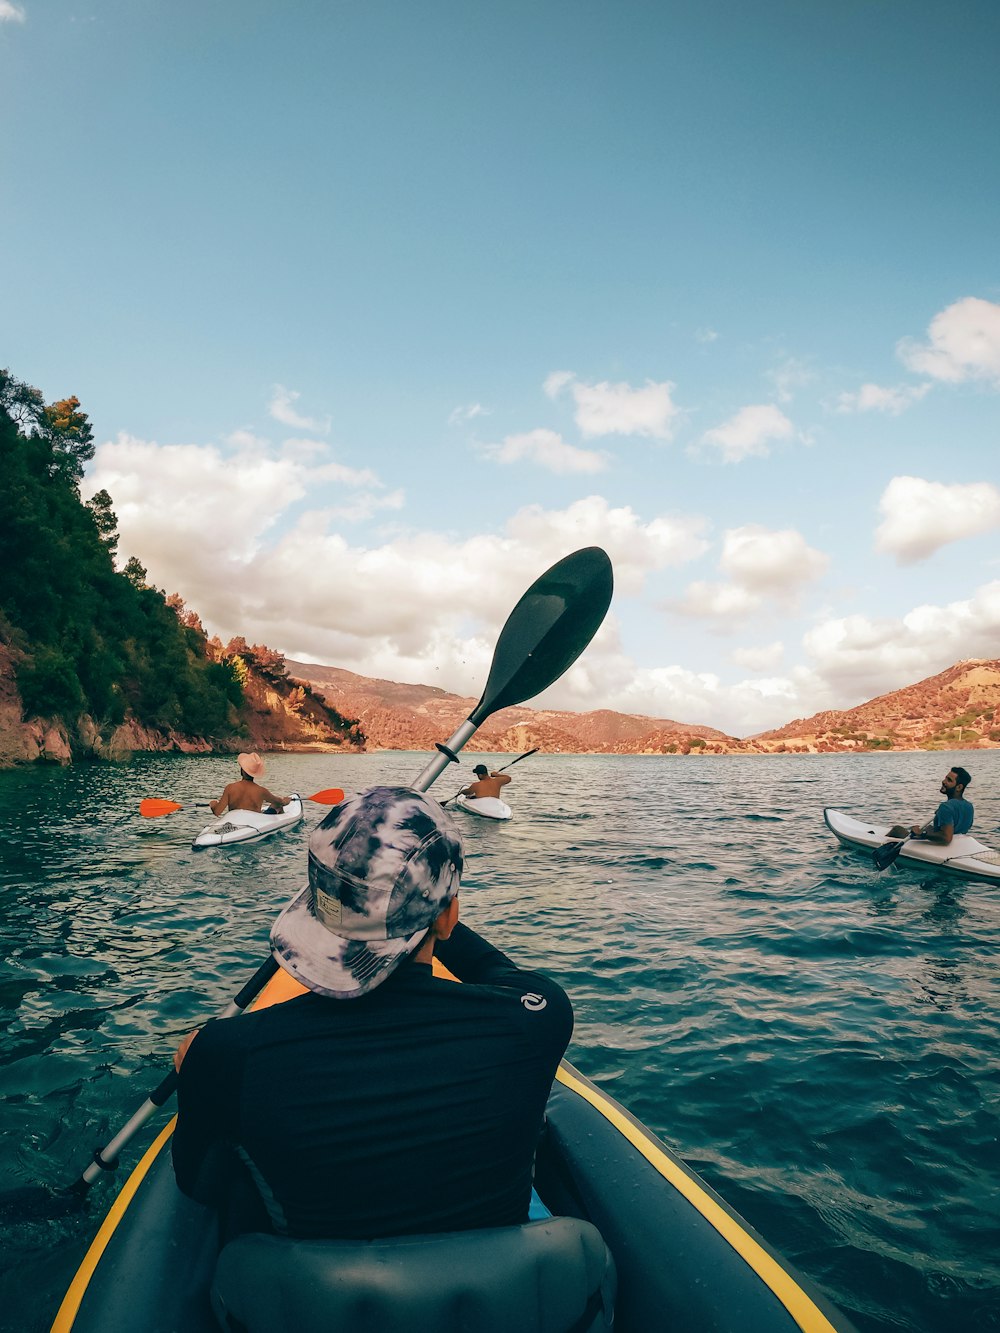 Un grupo de personas en kayaks remando en el agua